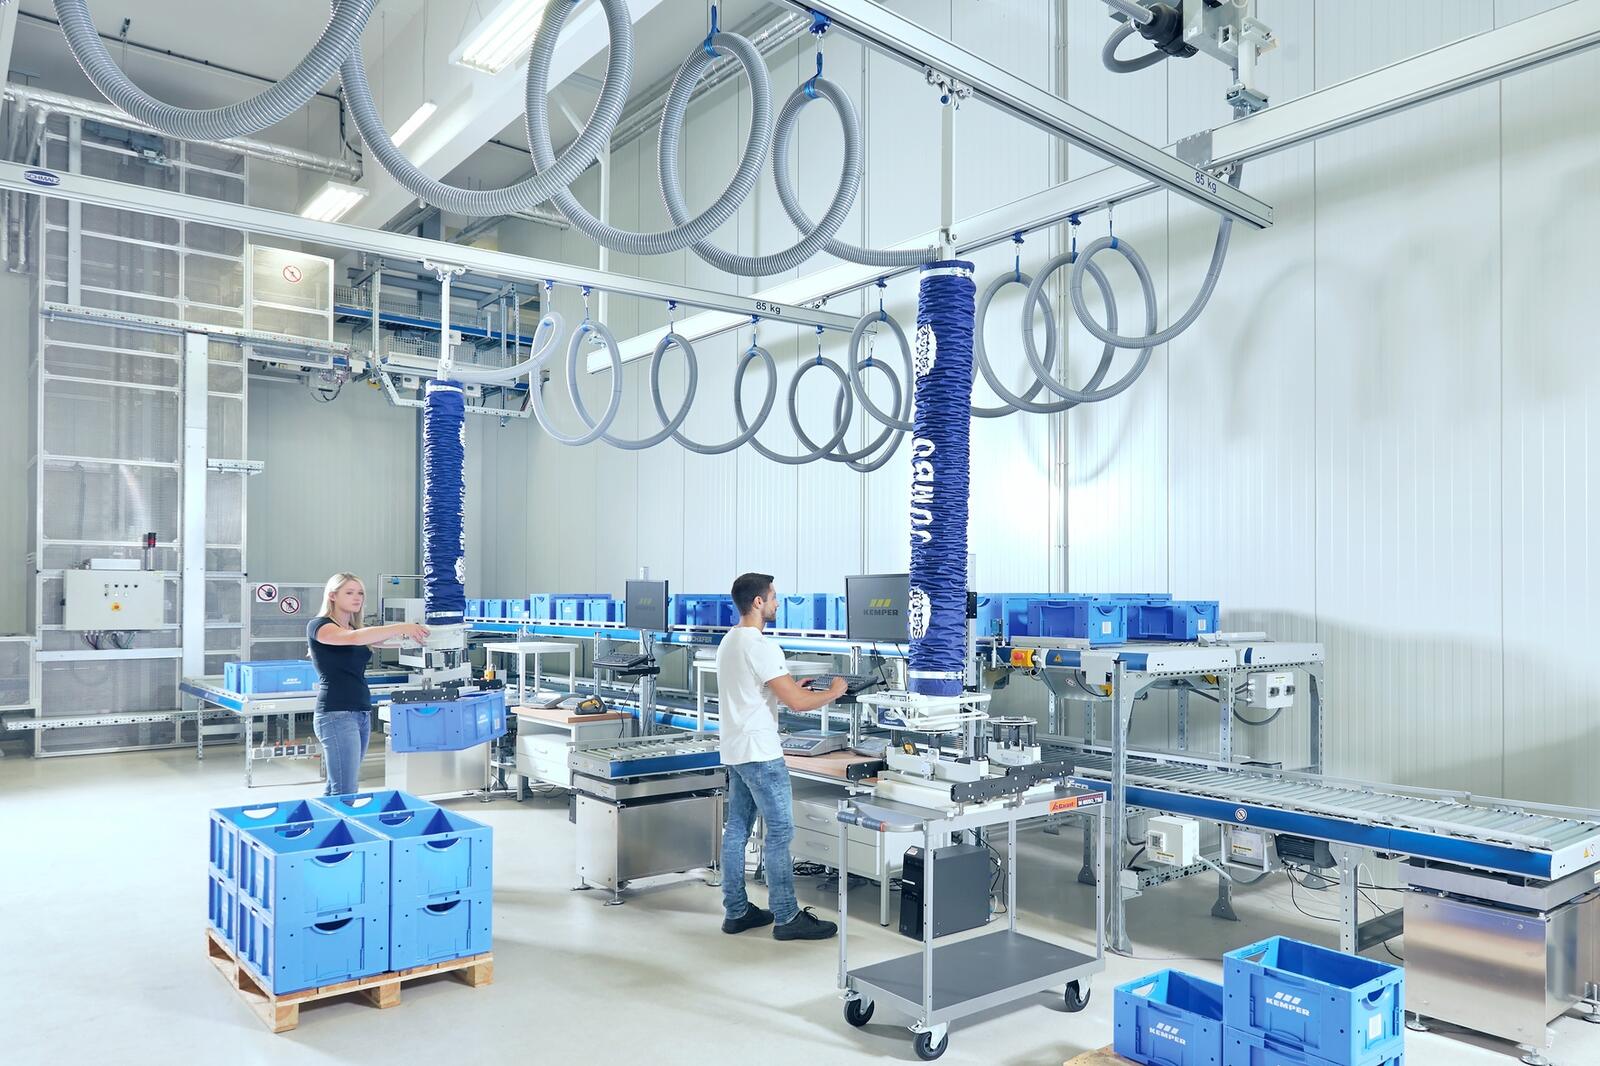 Schmalz bietet mit den Hängekrananlagen flexible Handhabungslösungen für große Arbeitsbereiche und Lasten bis 1.200 kg.